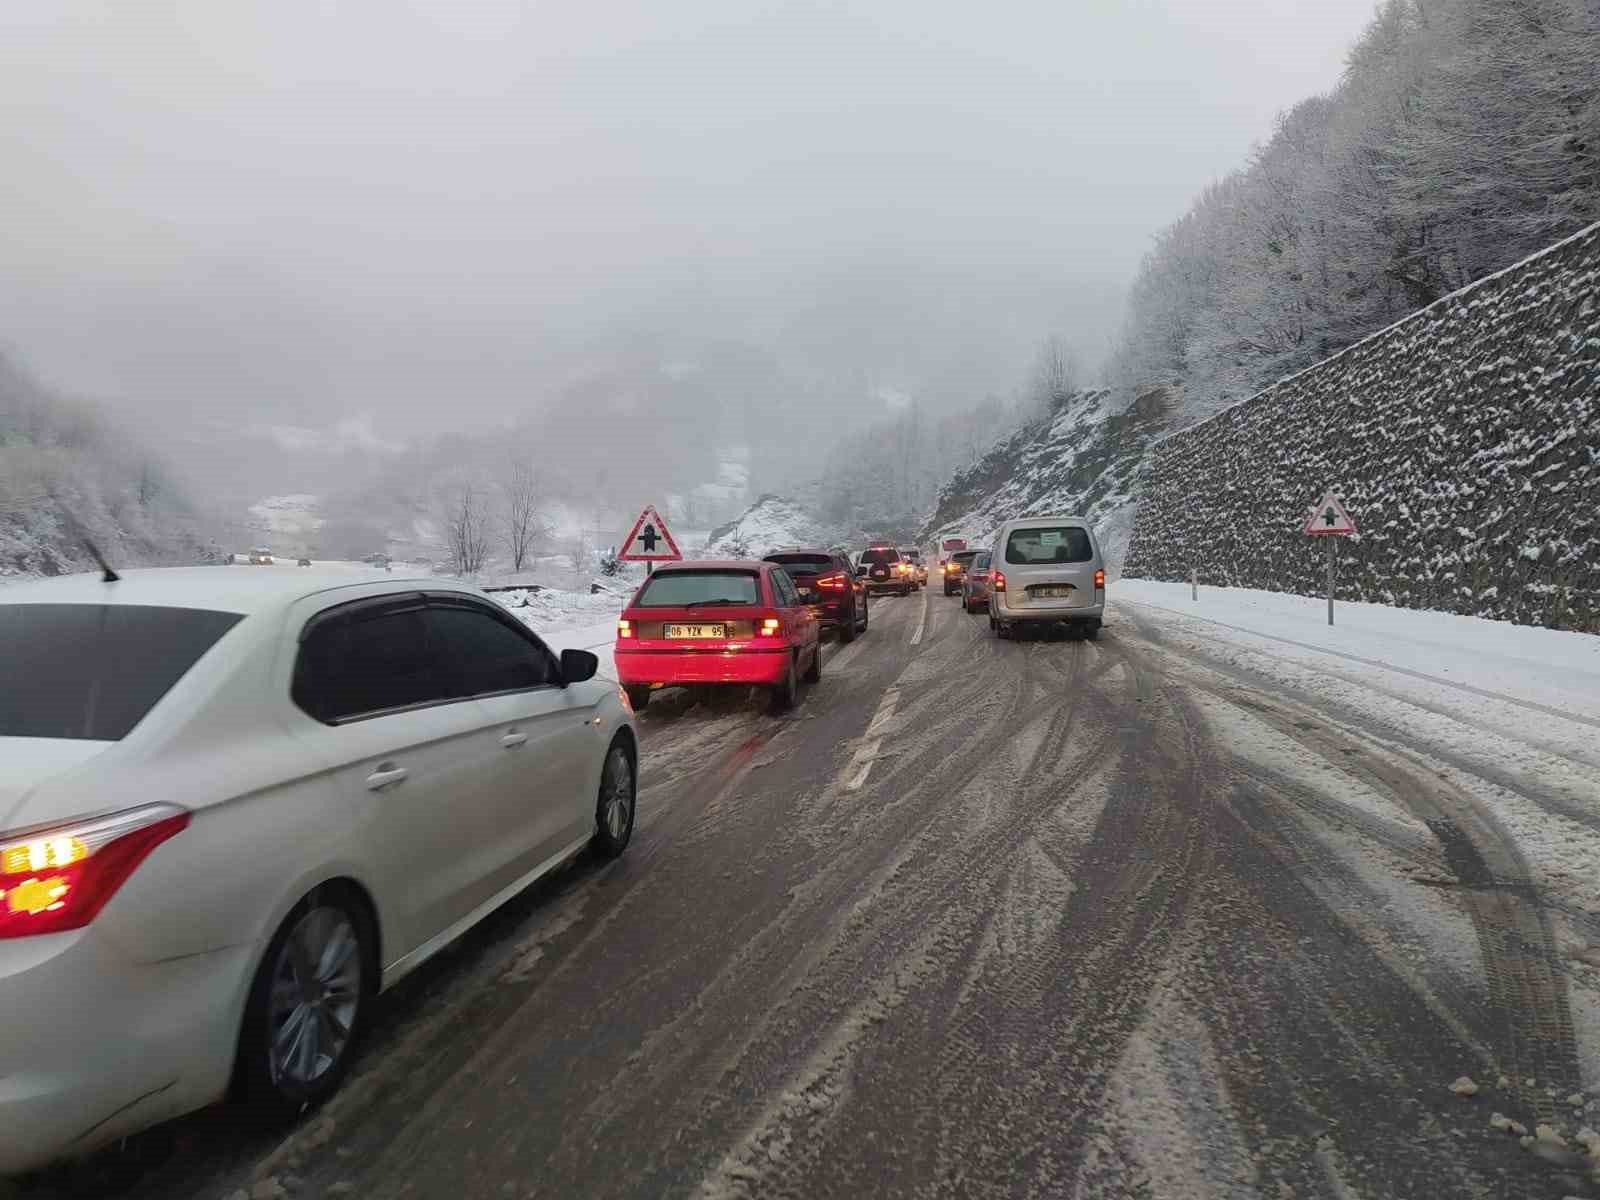 Zonguldak’ta Kar Yağışıyla Birlikte Karayolunda Uzun Araç Kuyrukları Oluştu